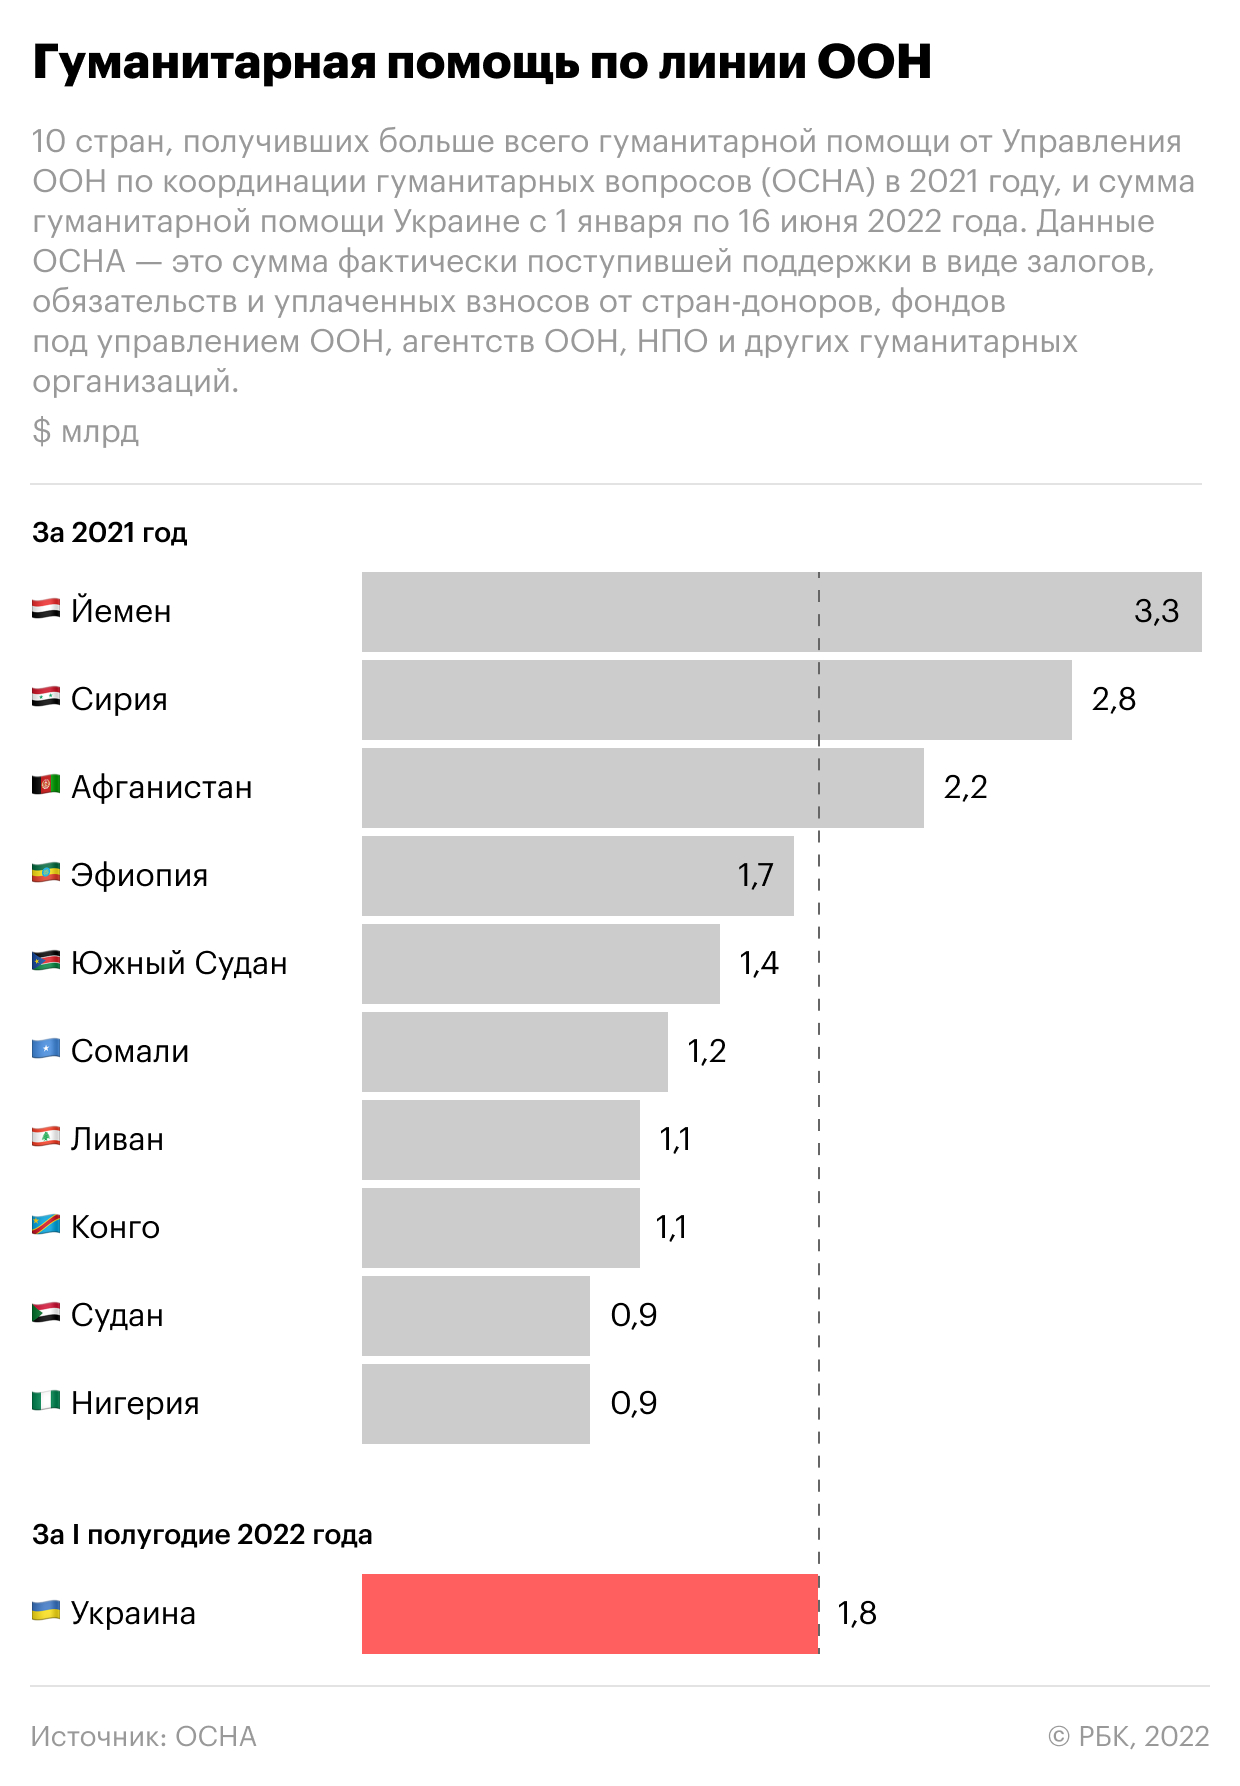 Помощь Украине превысила в 1,6 раза доходы ее бюджета за год